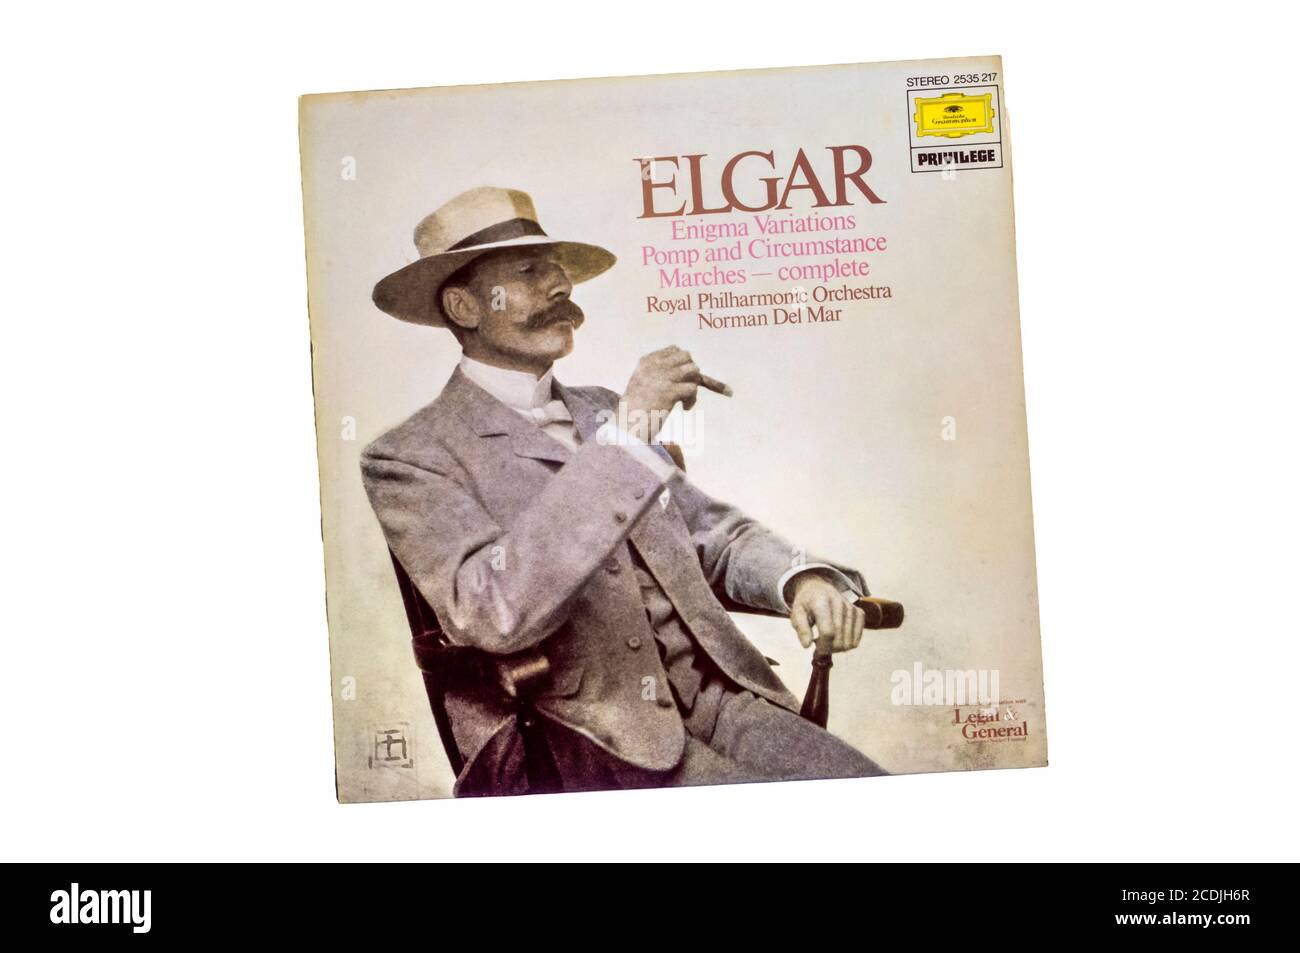 Enregistrement de Deutsche Grammophon de Enigma variations & Pomp et circonstance Marches d'Elgar par l'Orchestre philharmonique royal. Publié en 1976. Banque D'Images